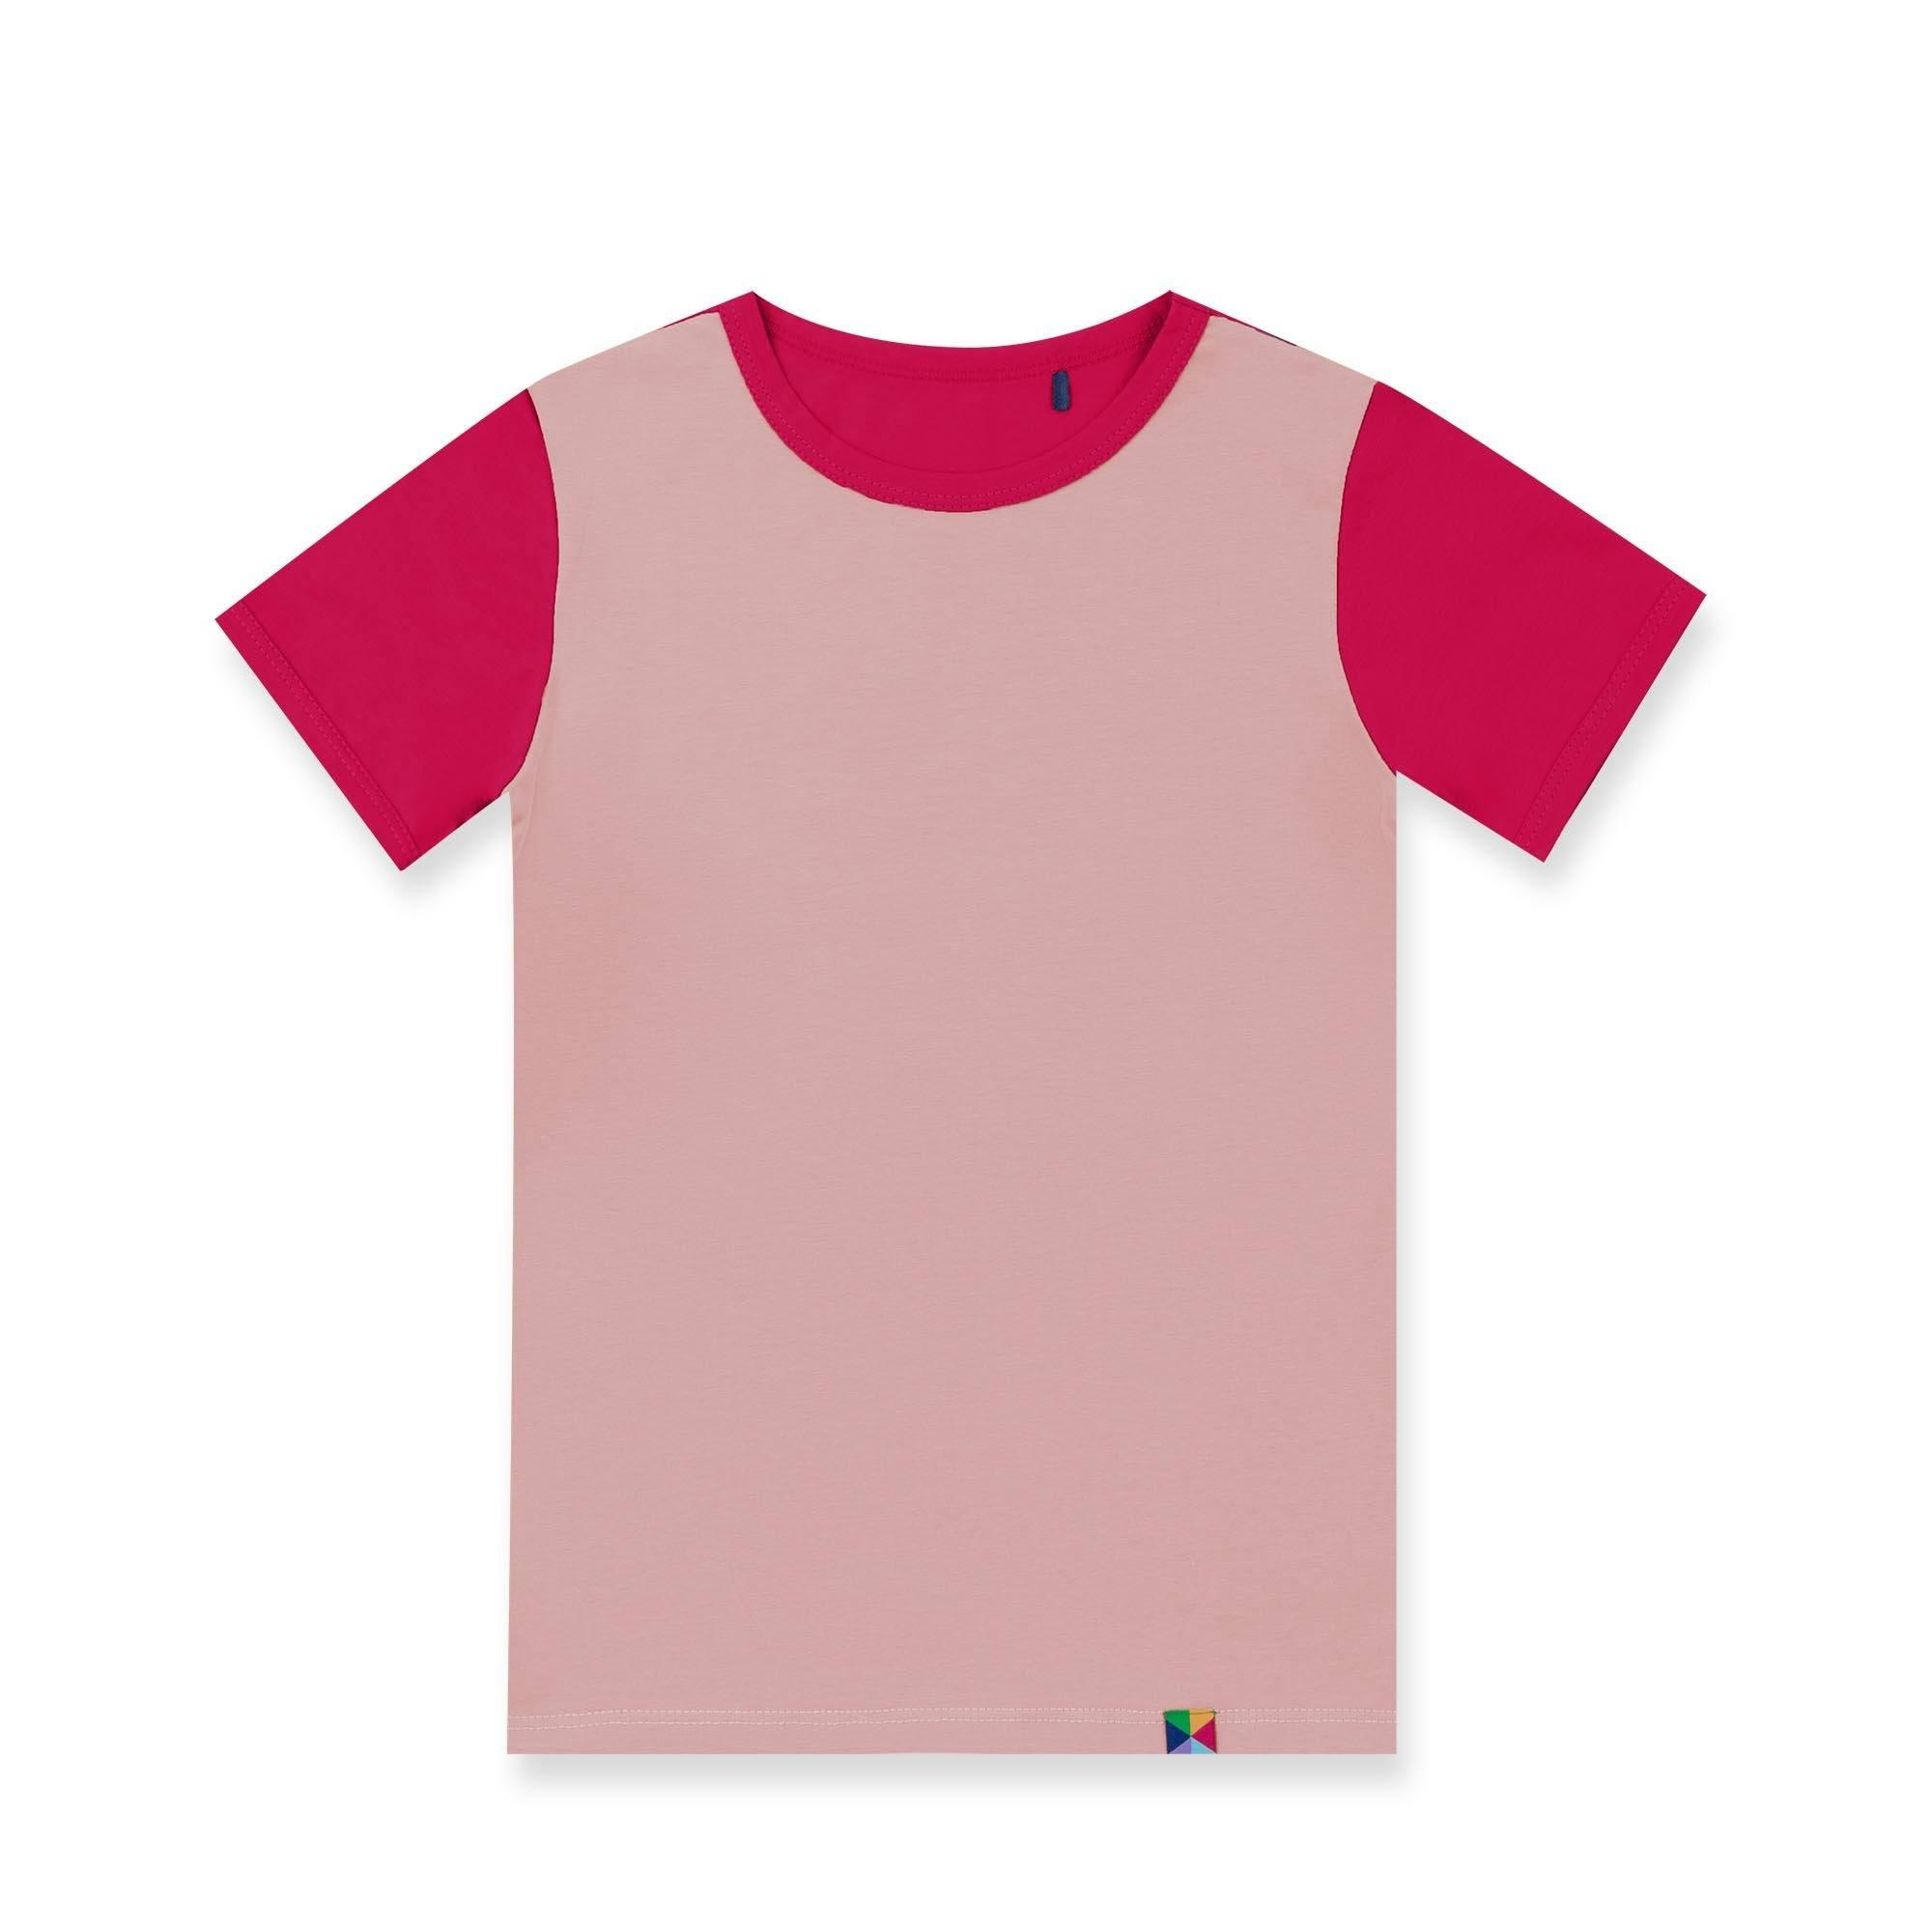 Pudroworóżowo-różowa koszulka dwukolorowa niemowlęca